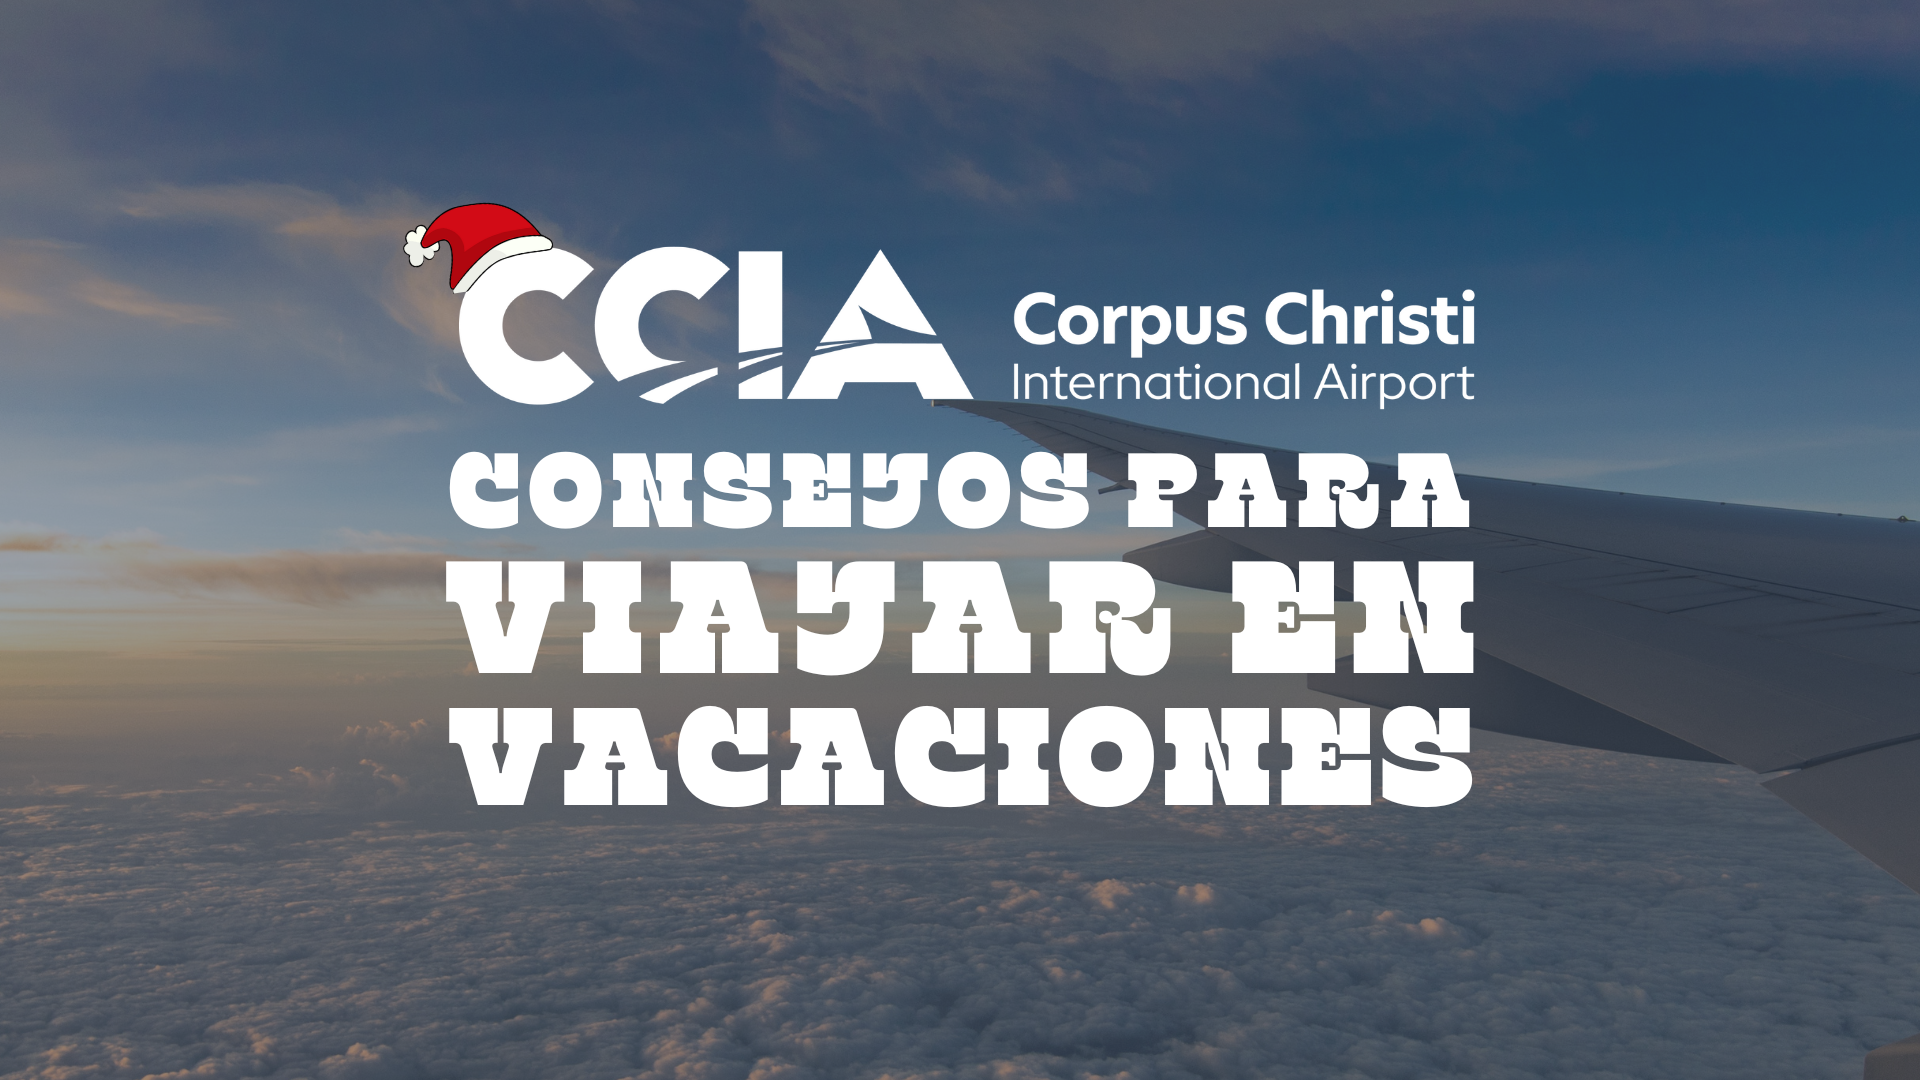 Featured image for “Consejos del CCIA para viajar en vacaciones”